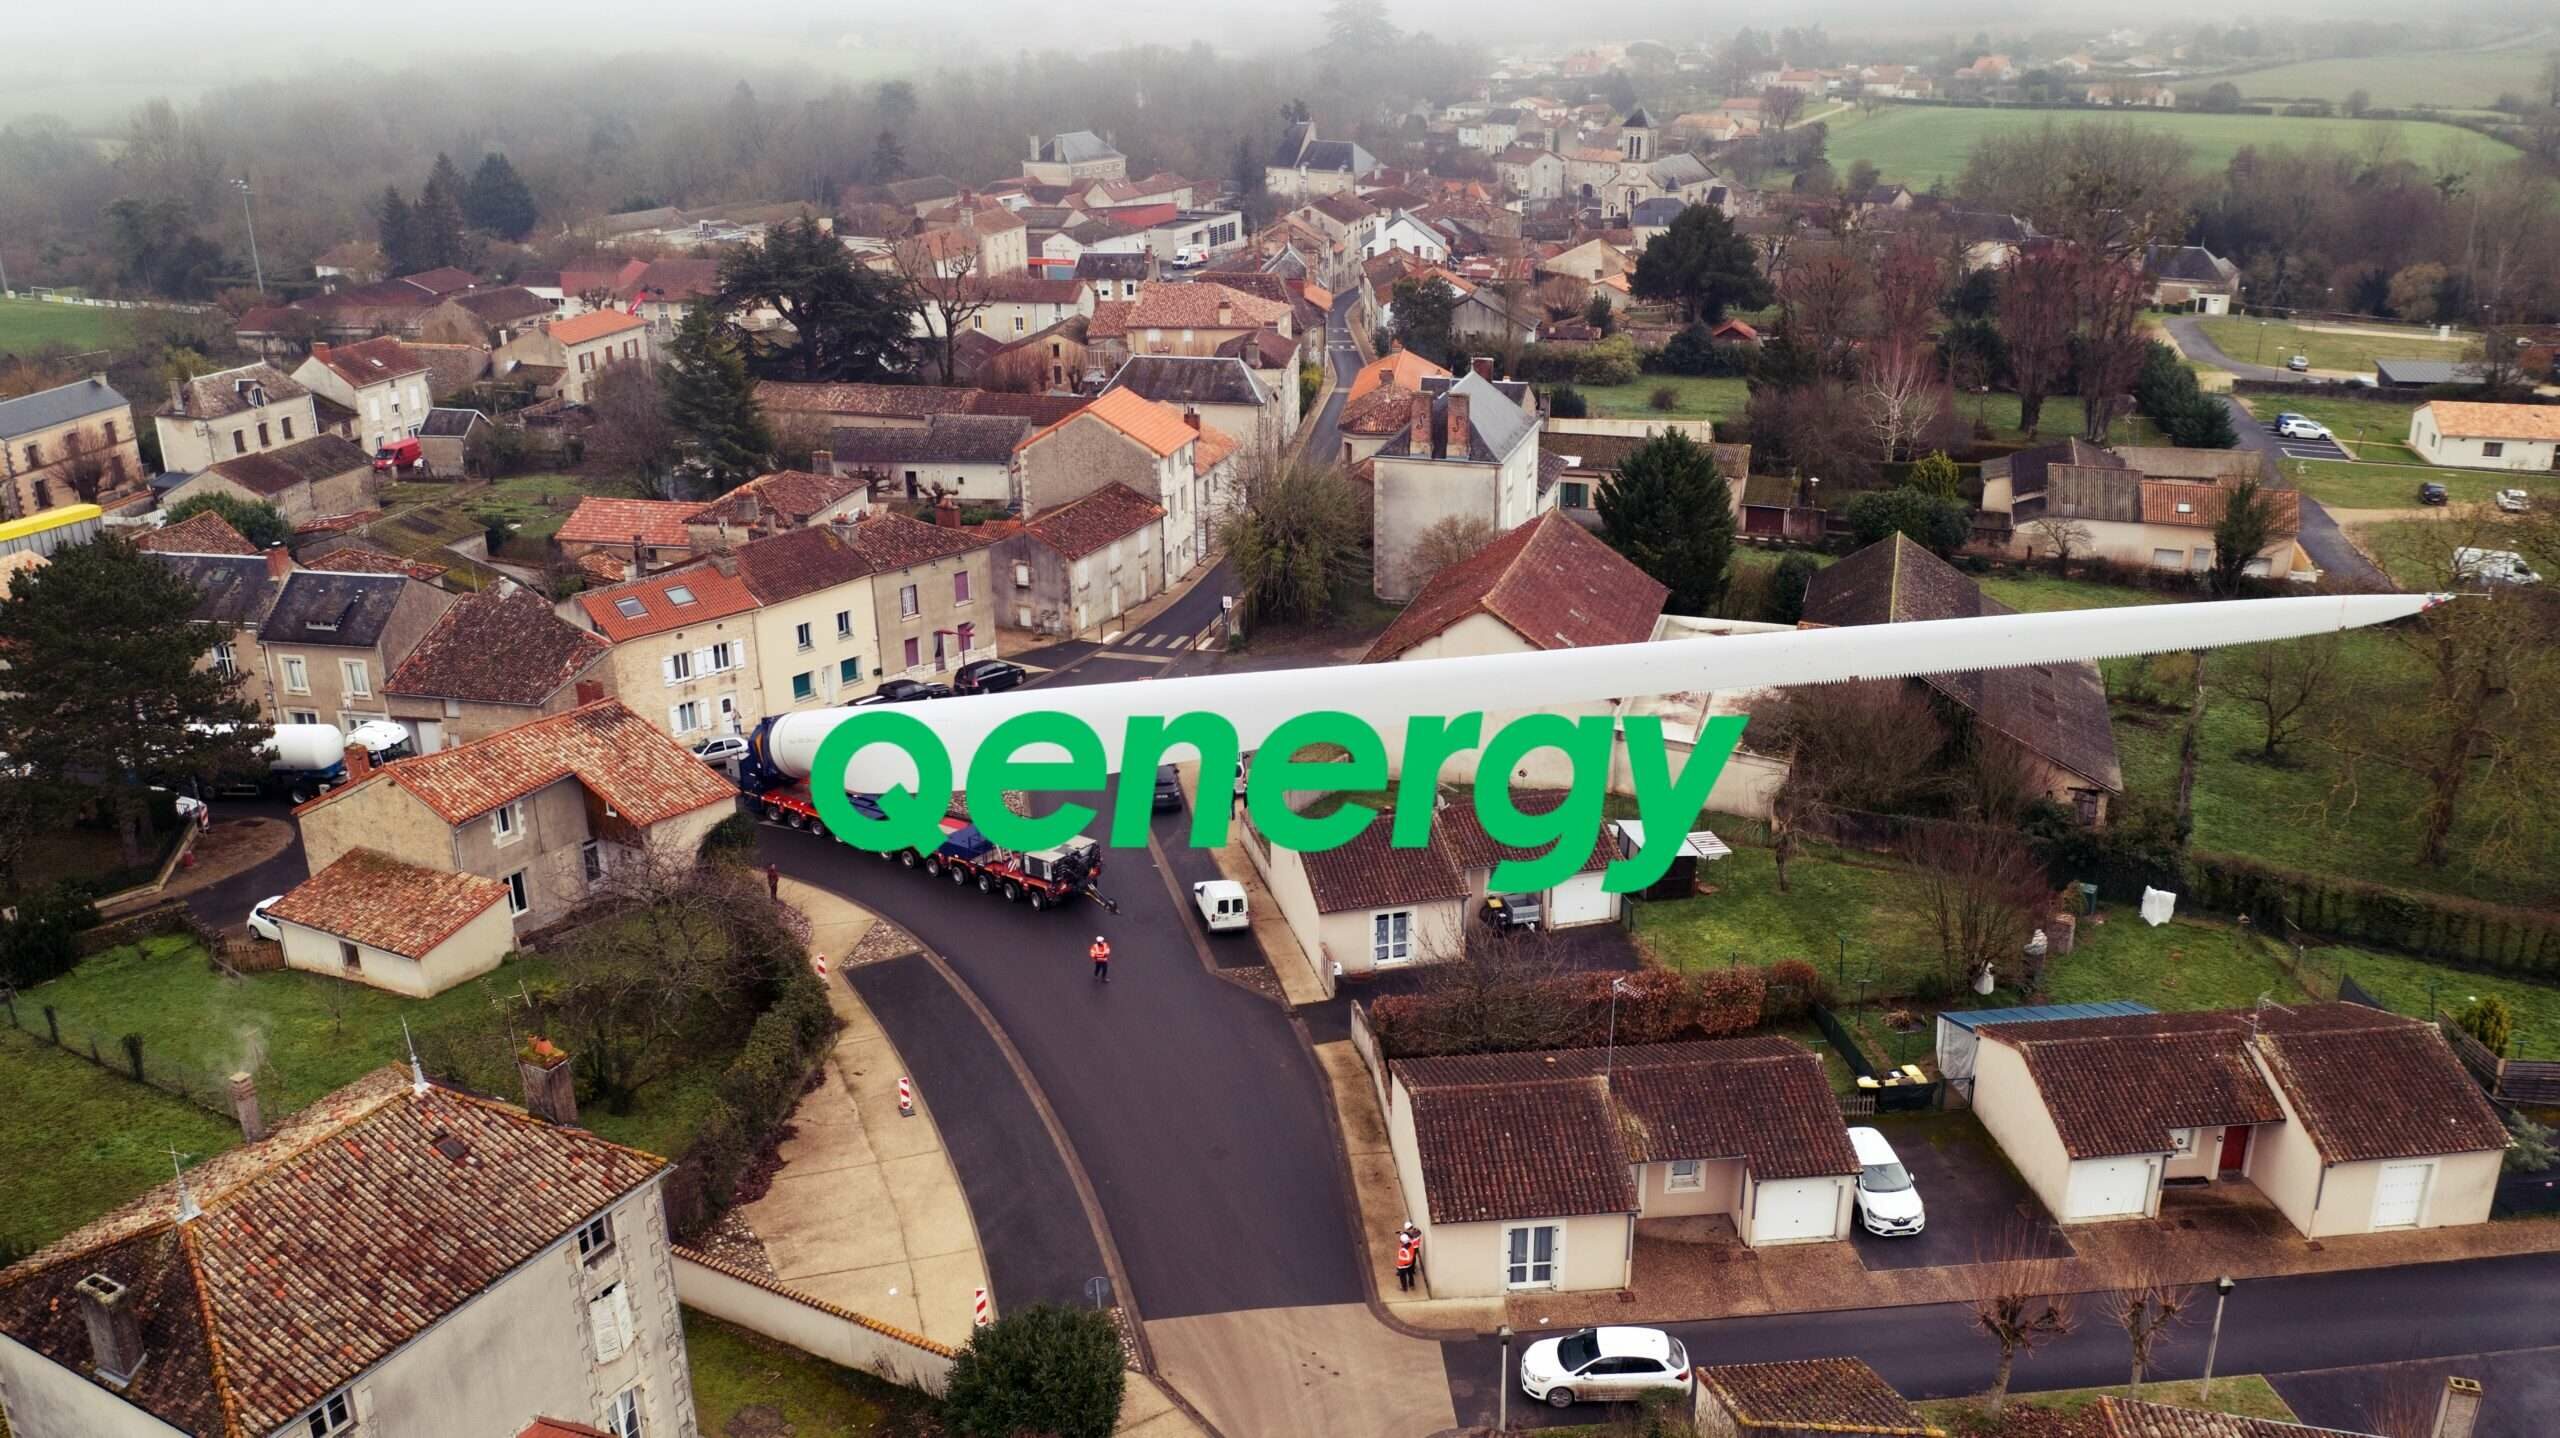 Qenergy - Extrait du tournage au drone de l'acheminement de la pale de l'éolienne